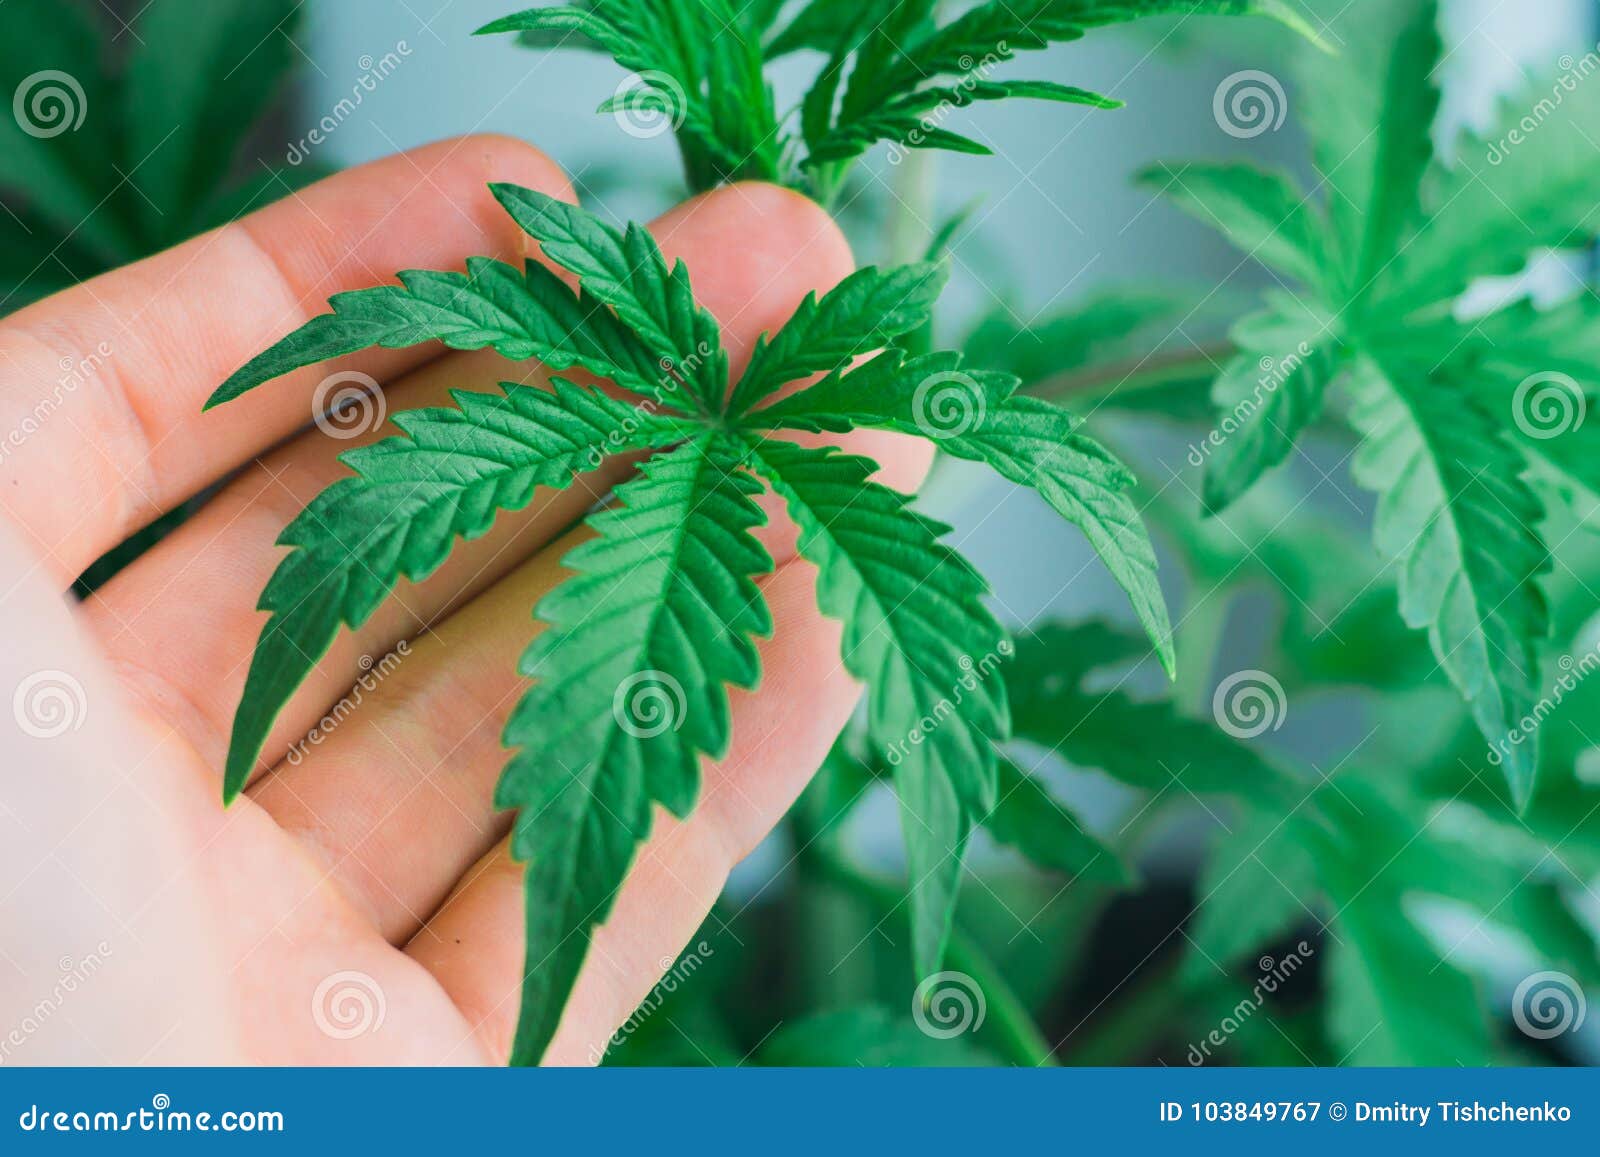 Красивые картинки коноплей купить семена марихуану спб